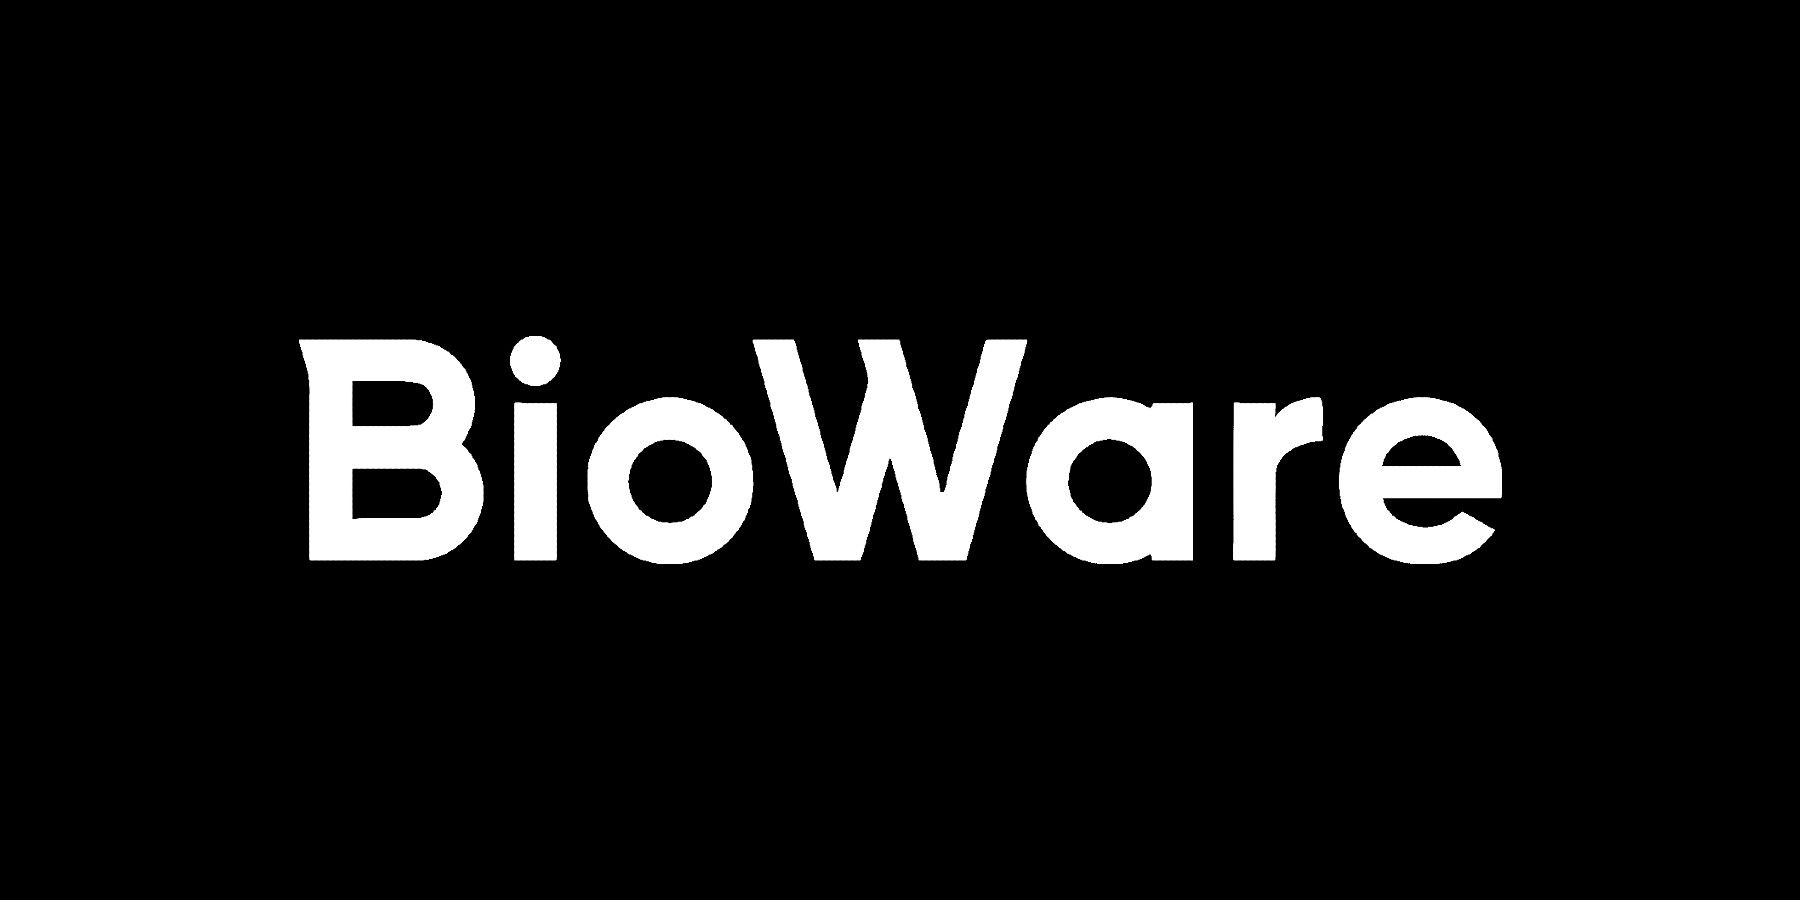 bioware logo black background